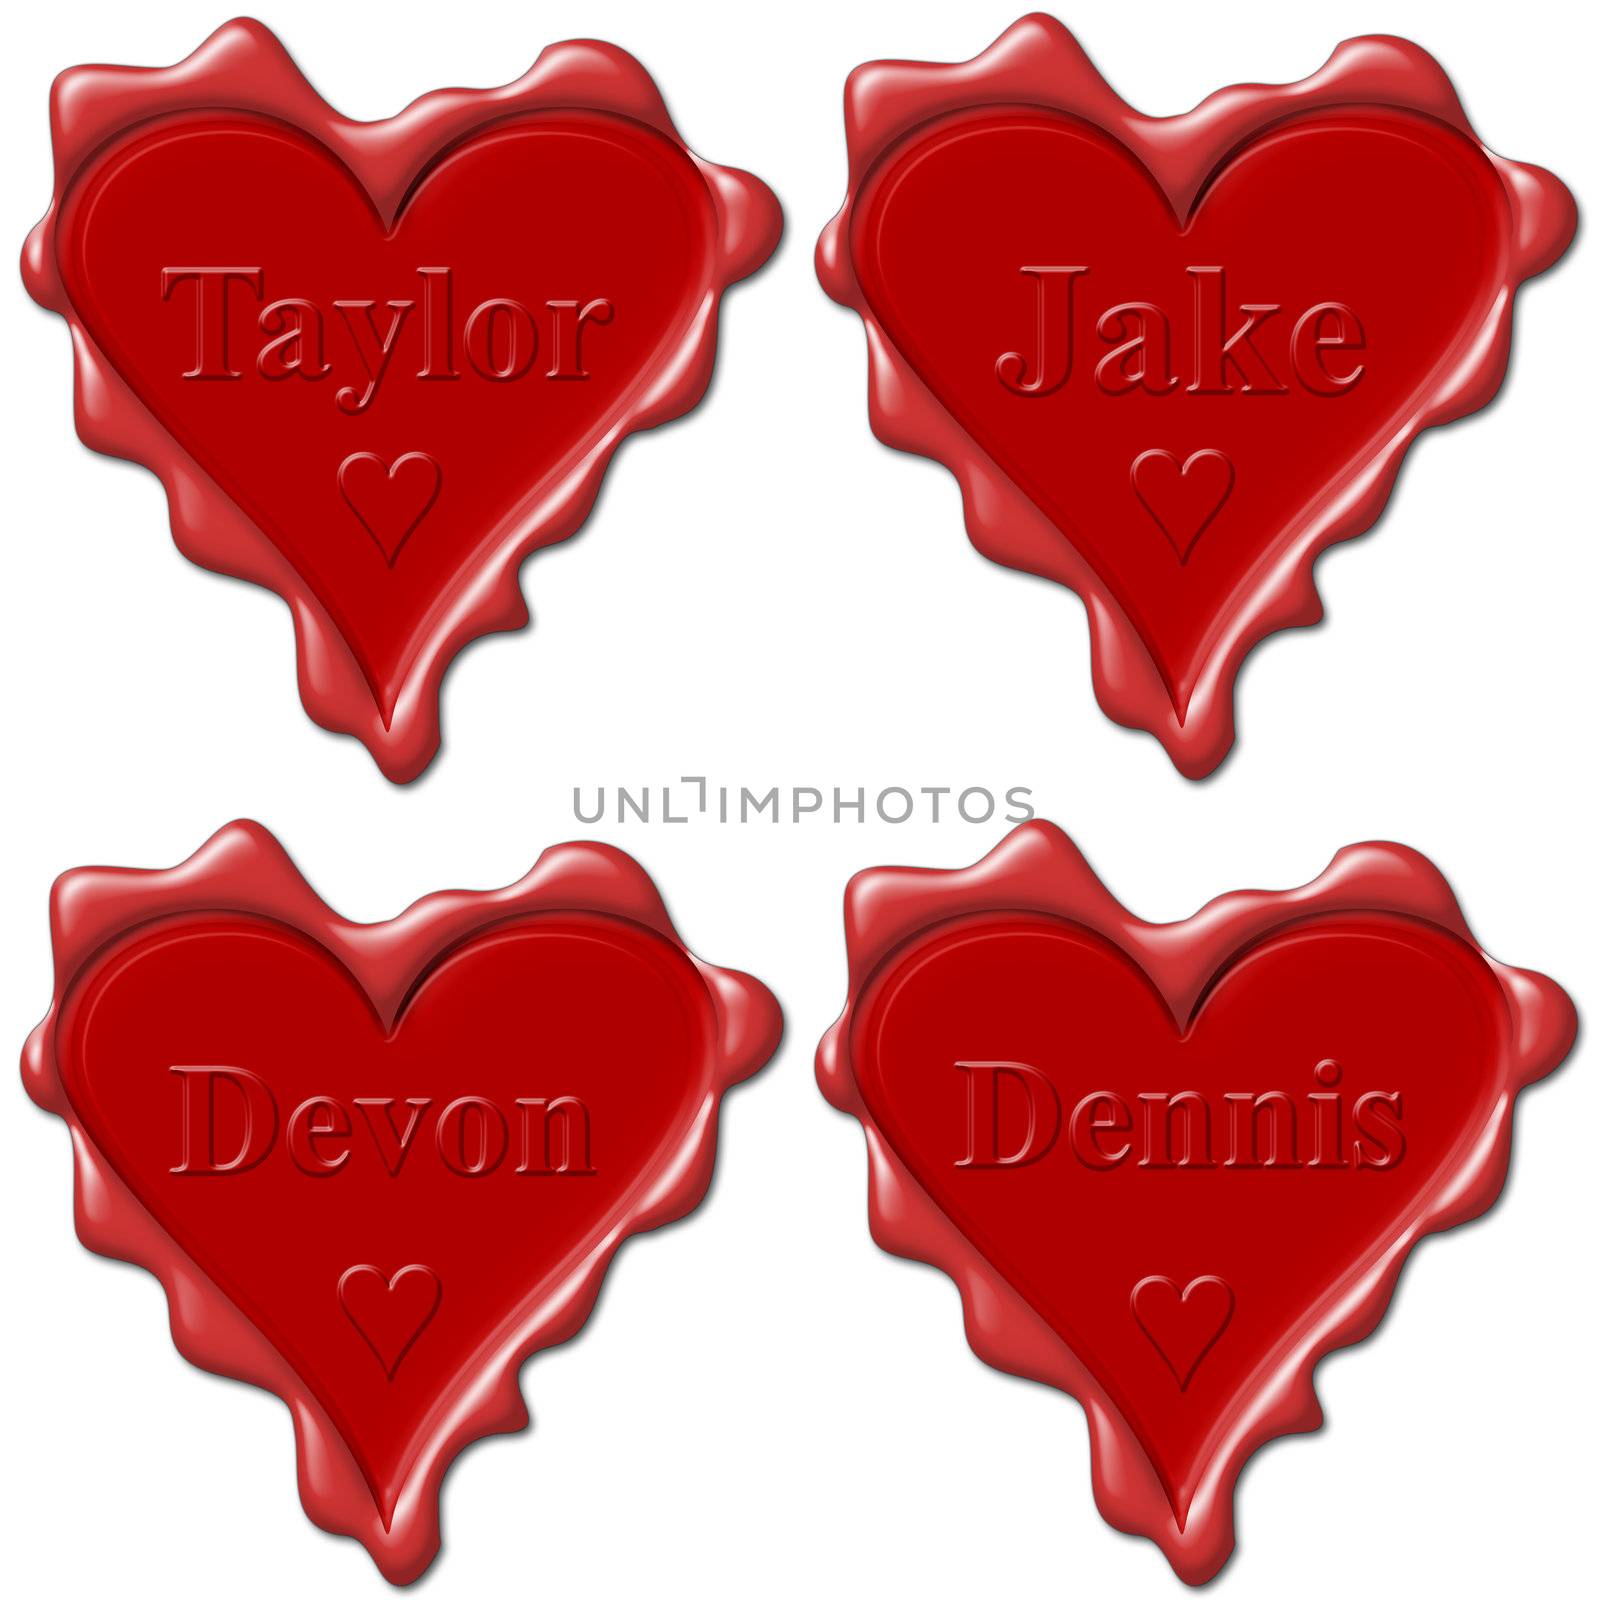 Valentine love hearts with names: Taylor, Jake, Devon, Dennis